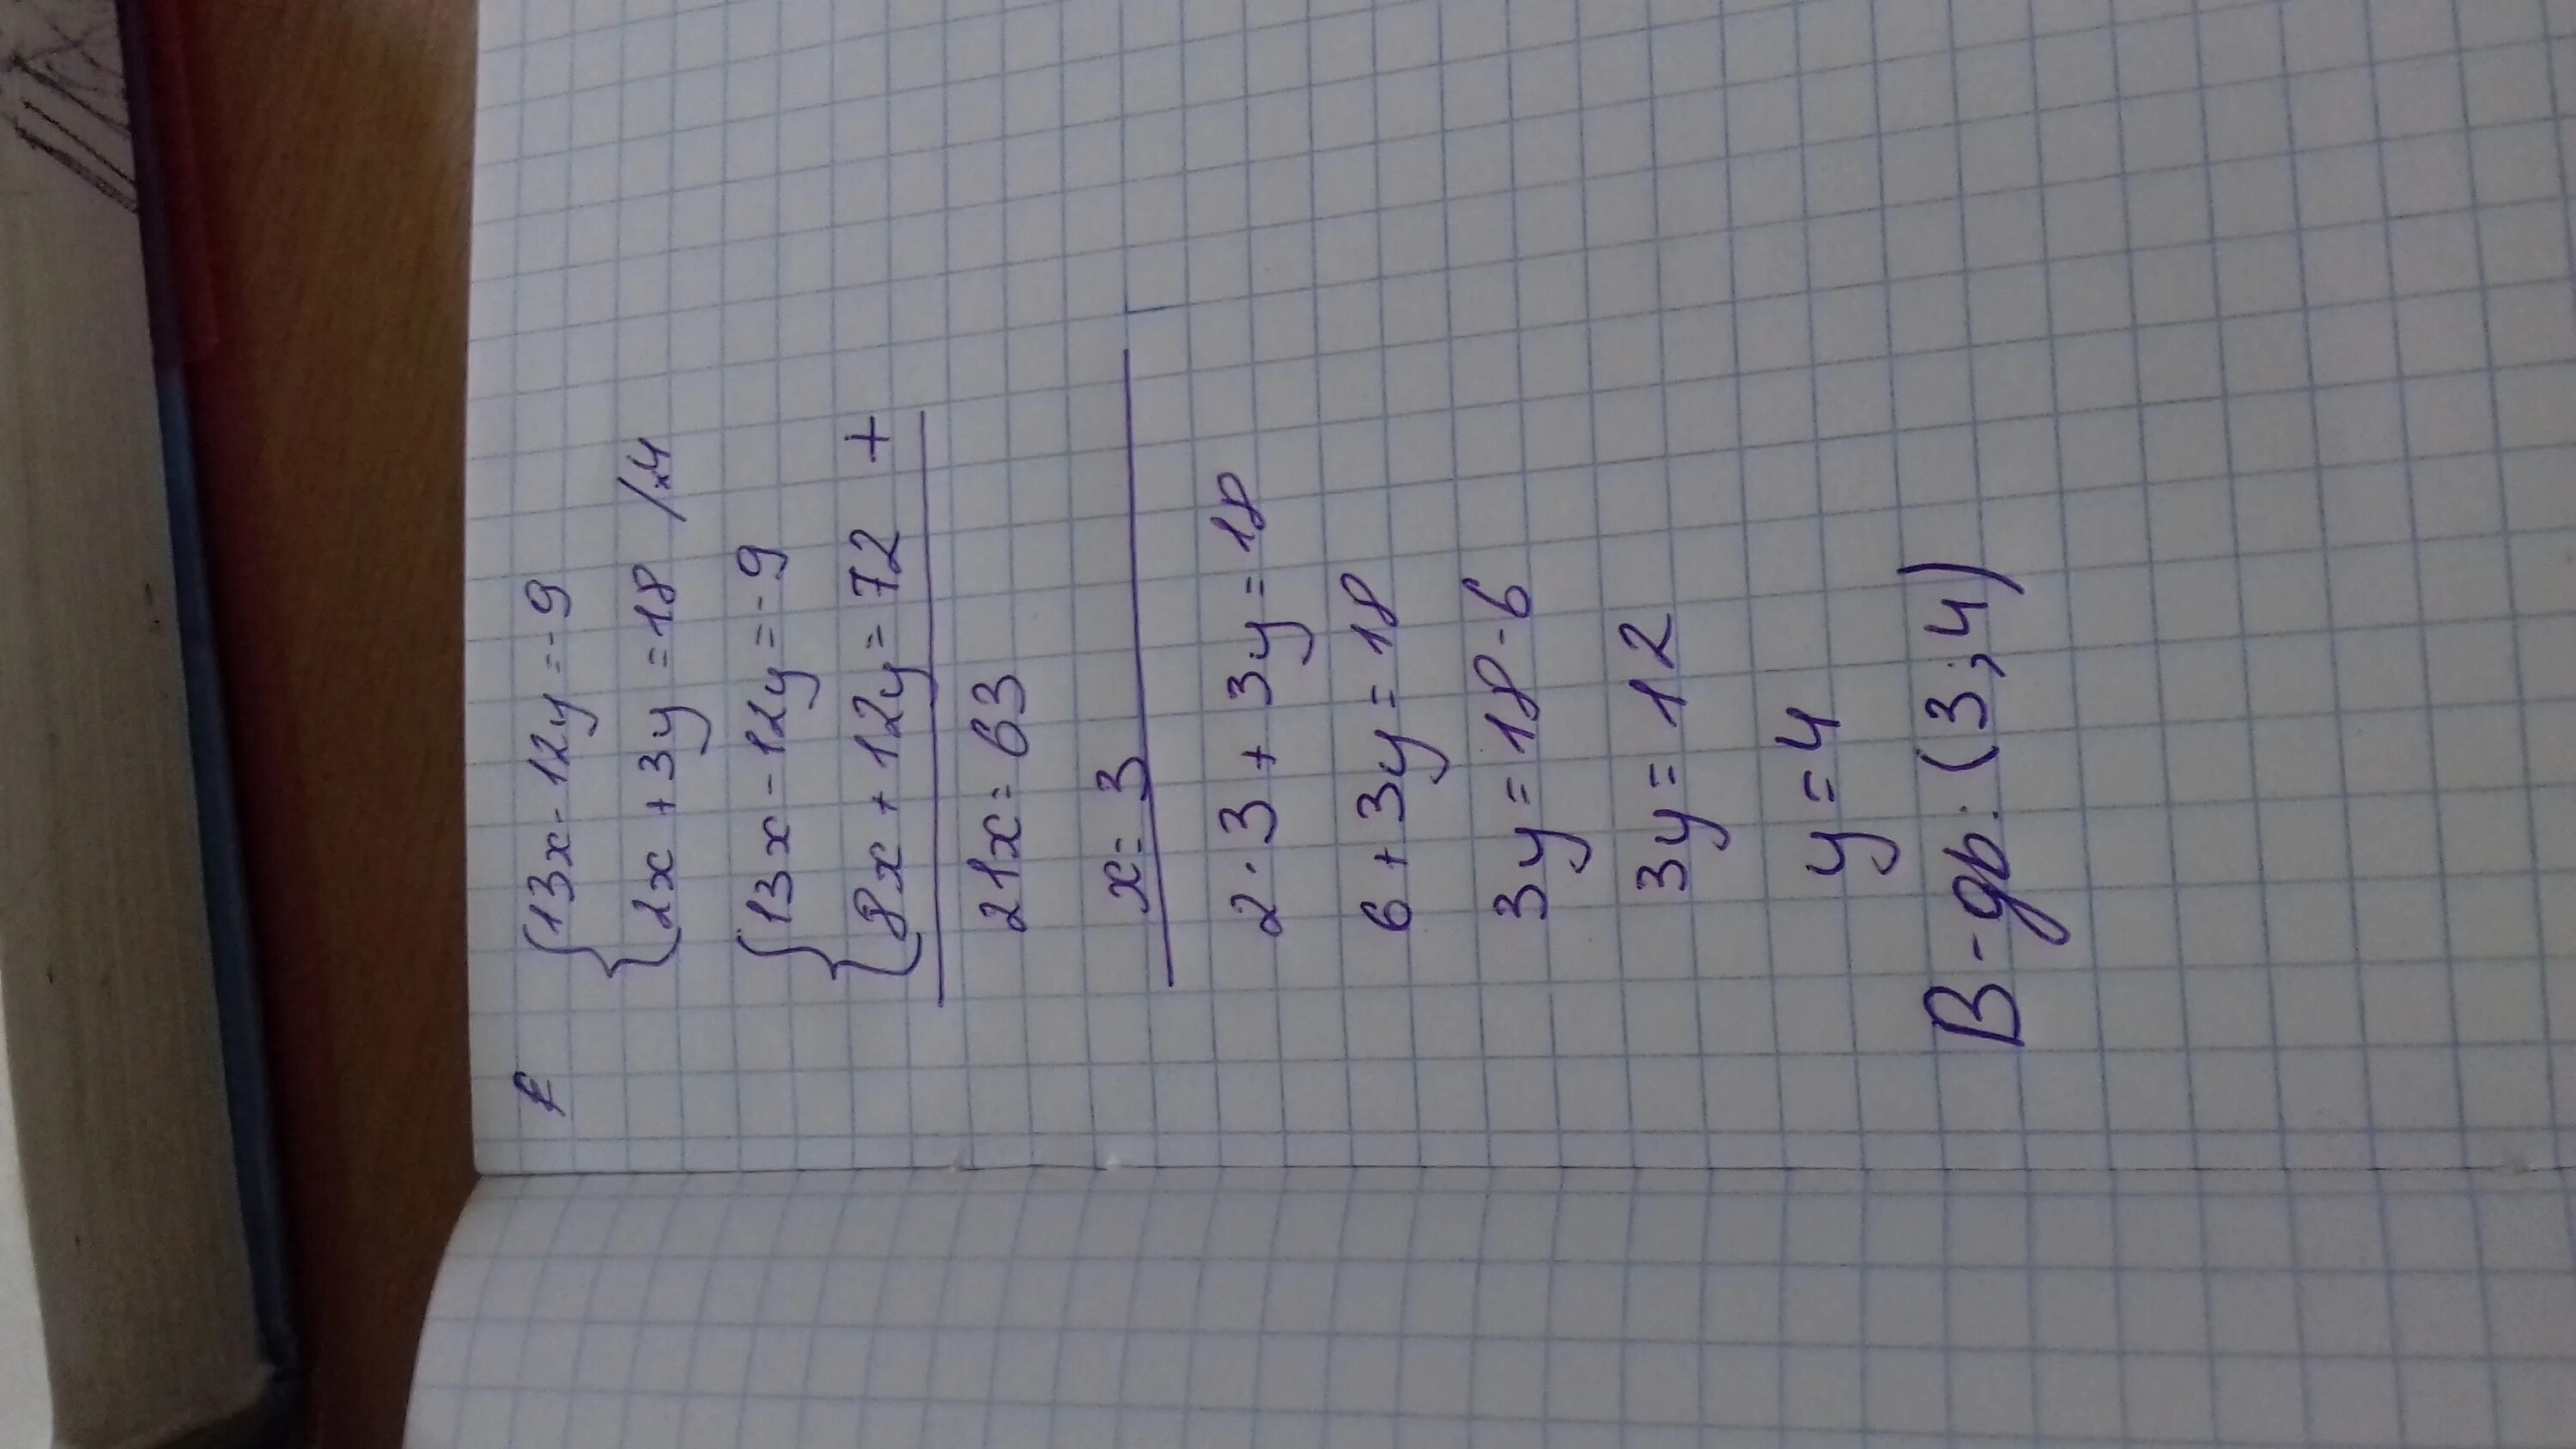 2х у 12 х у 3. 9/3*2. 4х-у=13 5х+3у=12. 3х-9у=12. 9 3 12 Х Х-?.